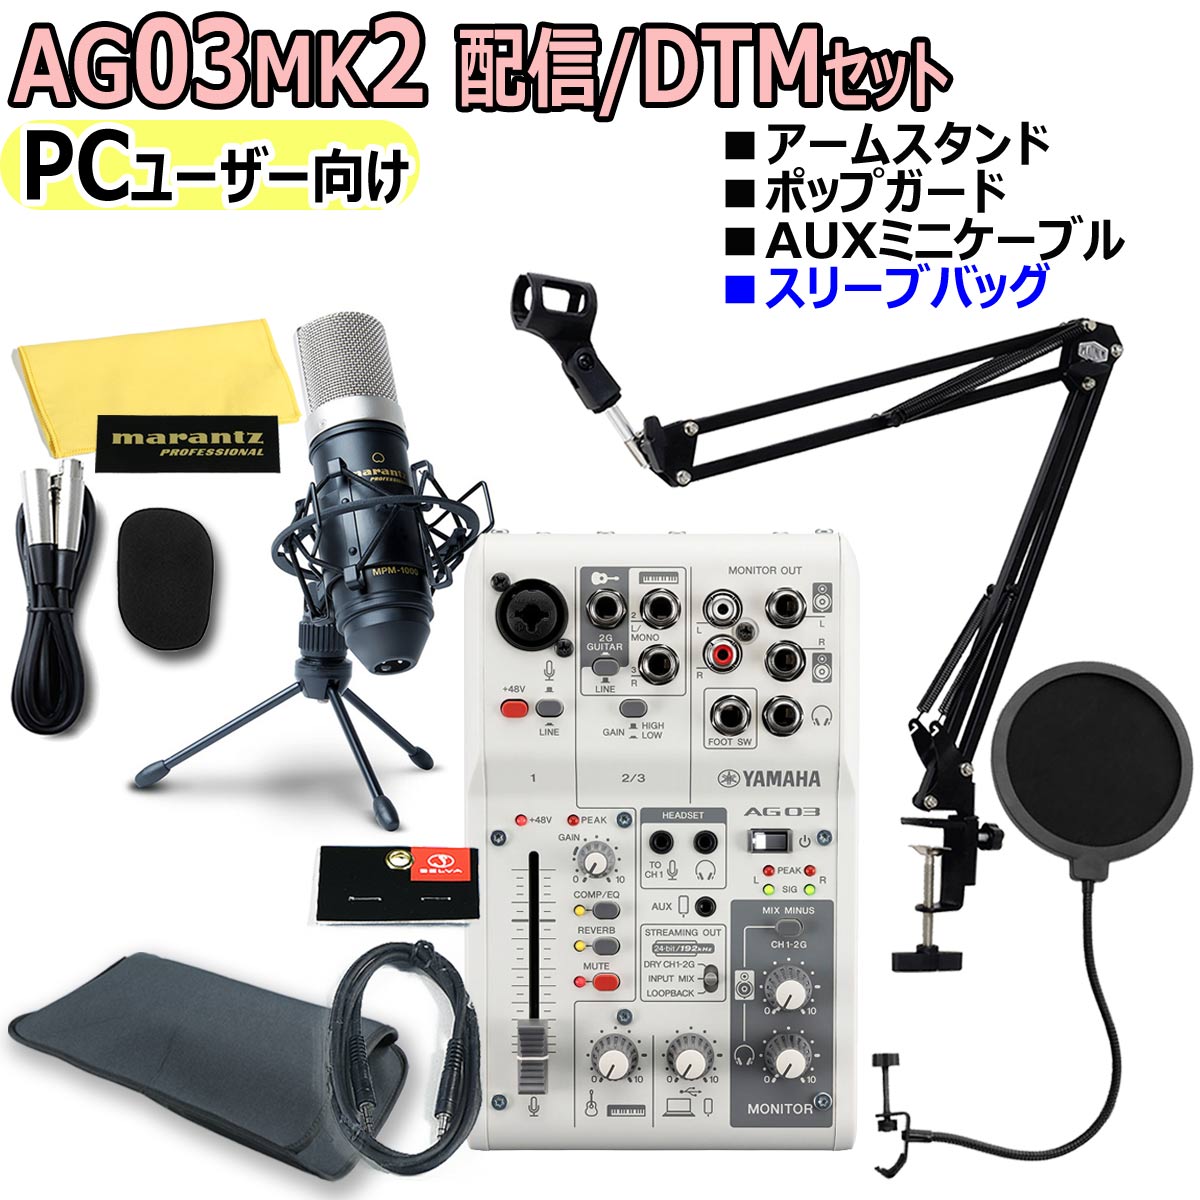 【楽天市場】【あす楽対象商品】YAMAHA / AG03MK2 WHITE PC 